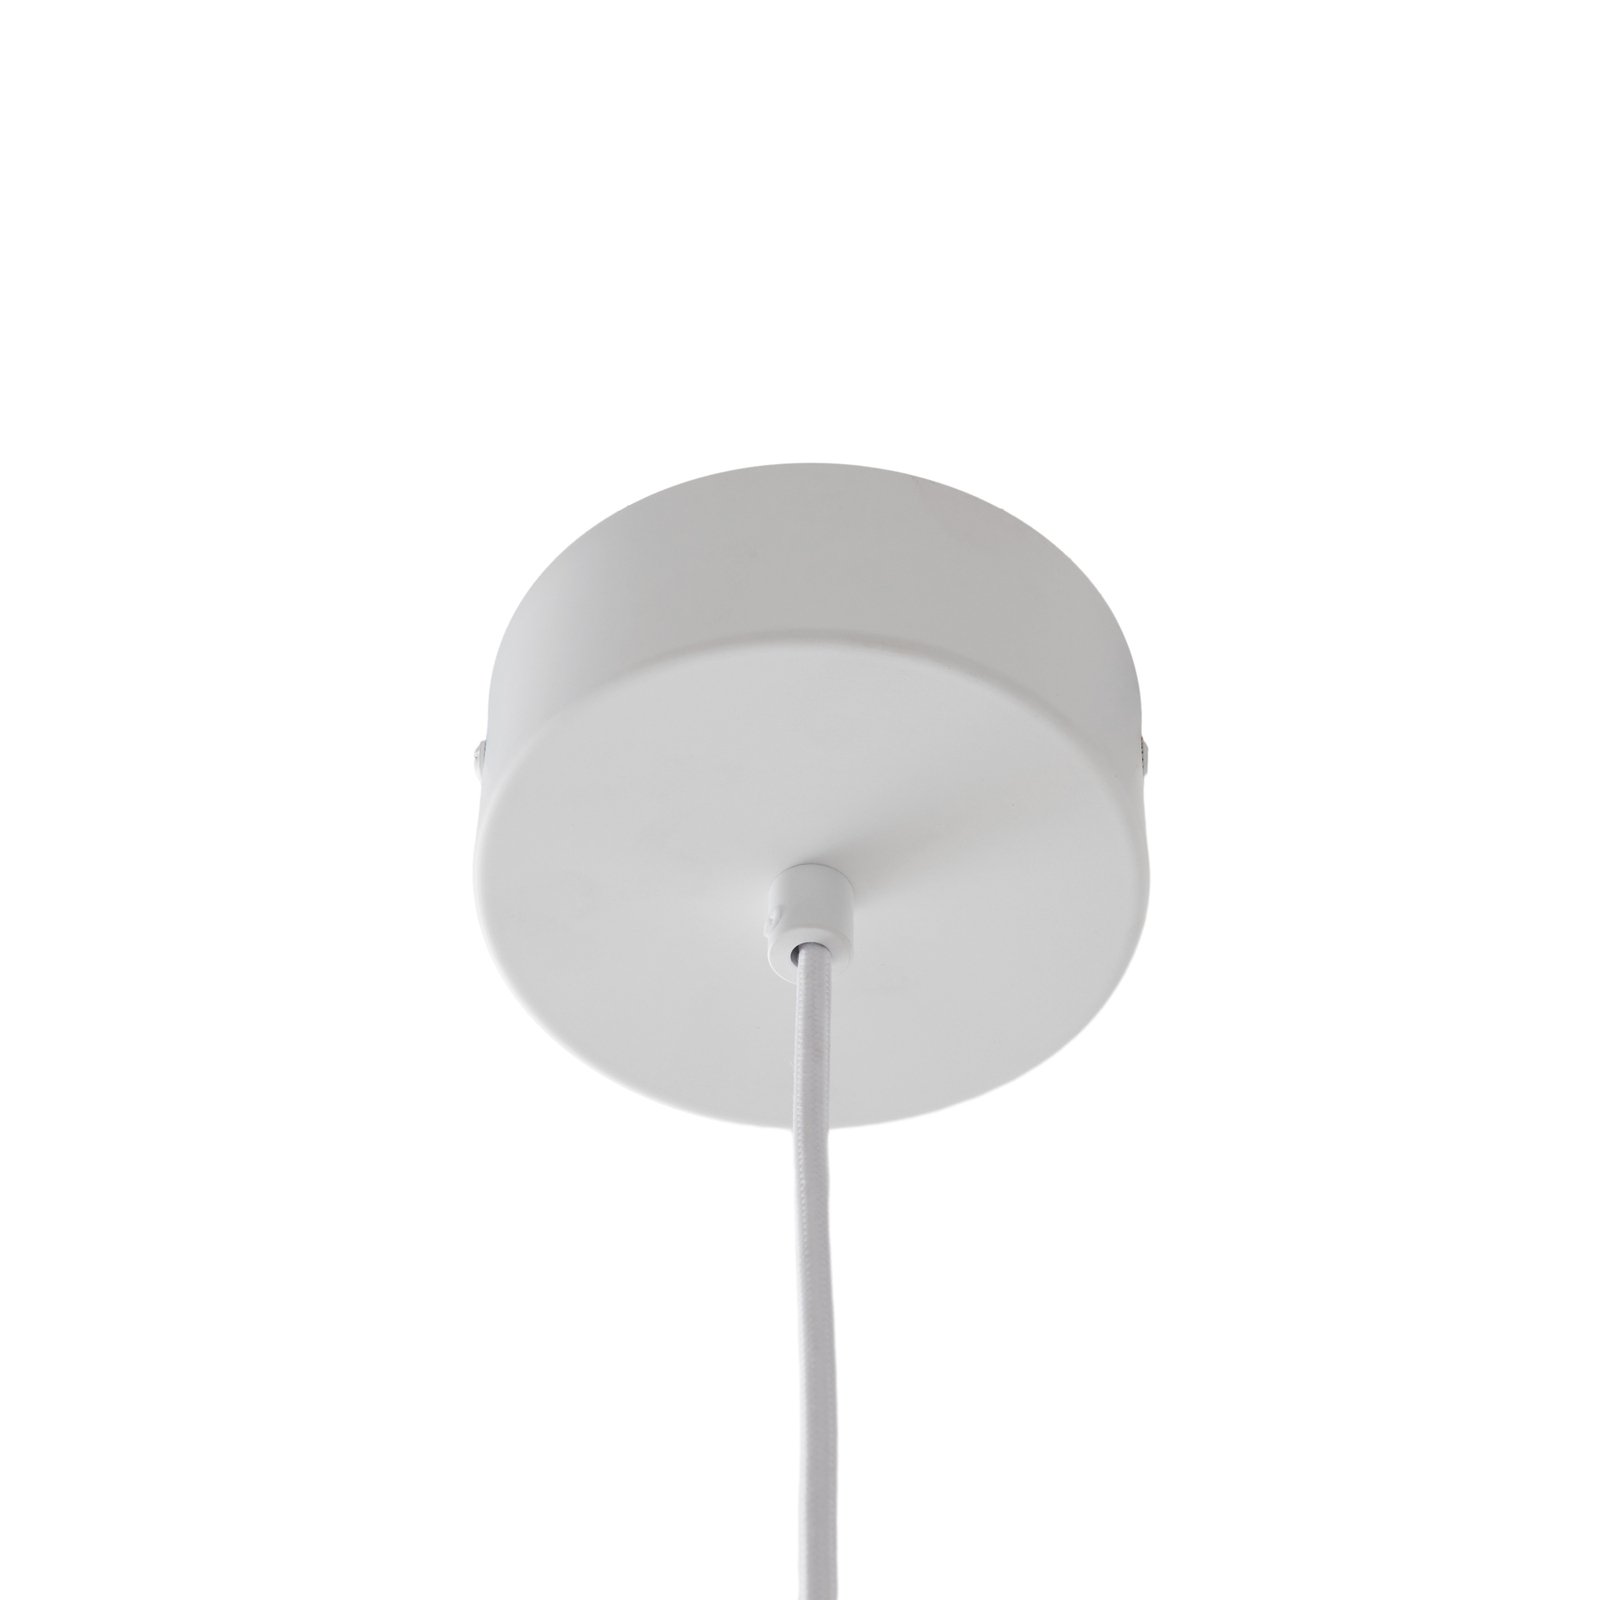 Lucande Mynoria LED-es függőlámpa, fehér színben